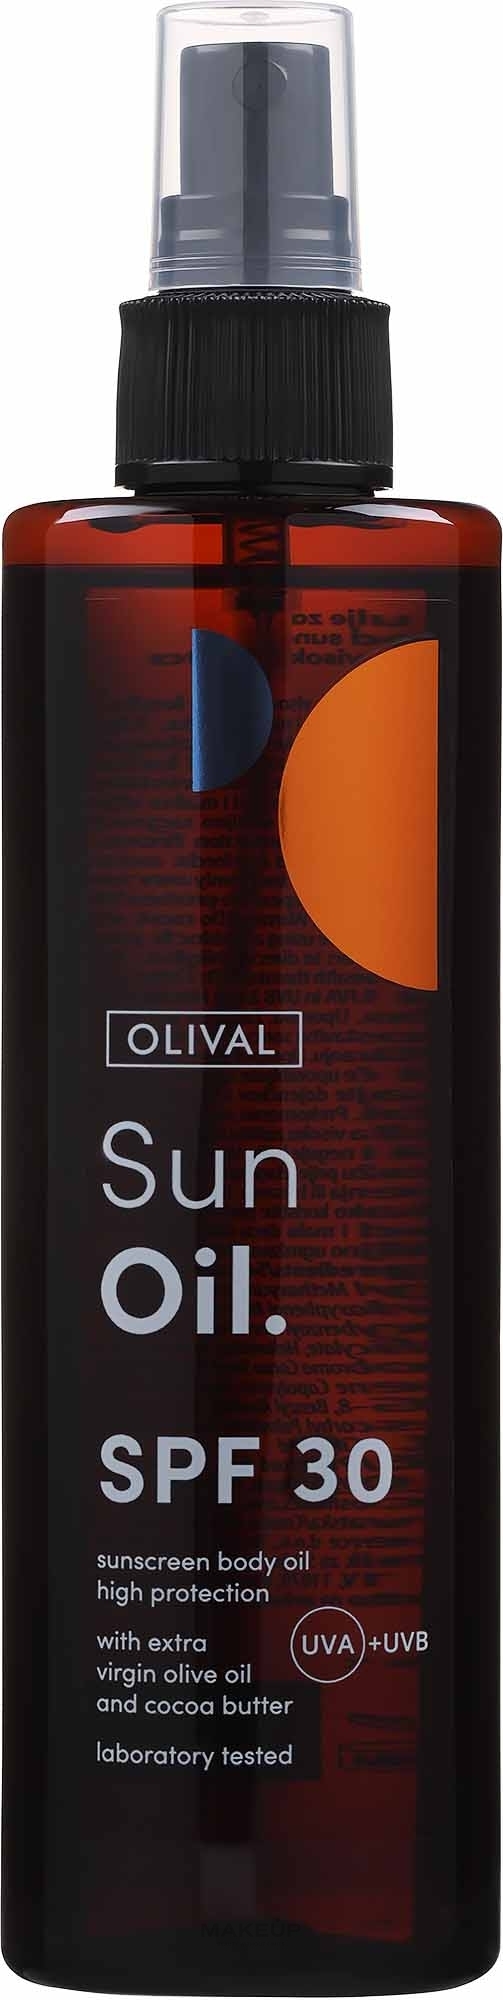 Сонцезахисна олія з SPF 30 для тіла - Olival Sun Oile SPF 30 — фото 200ml